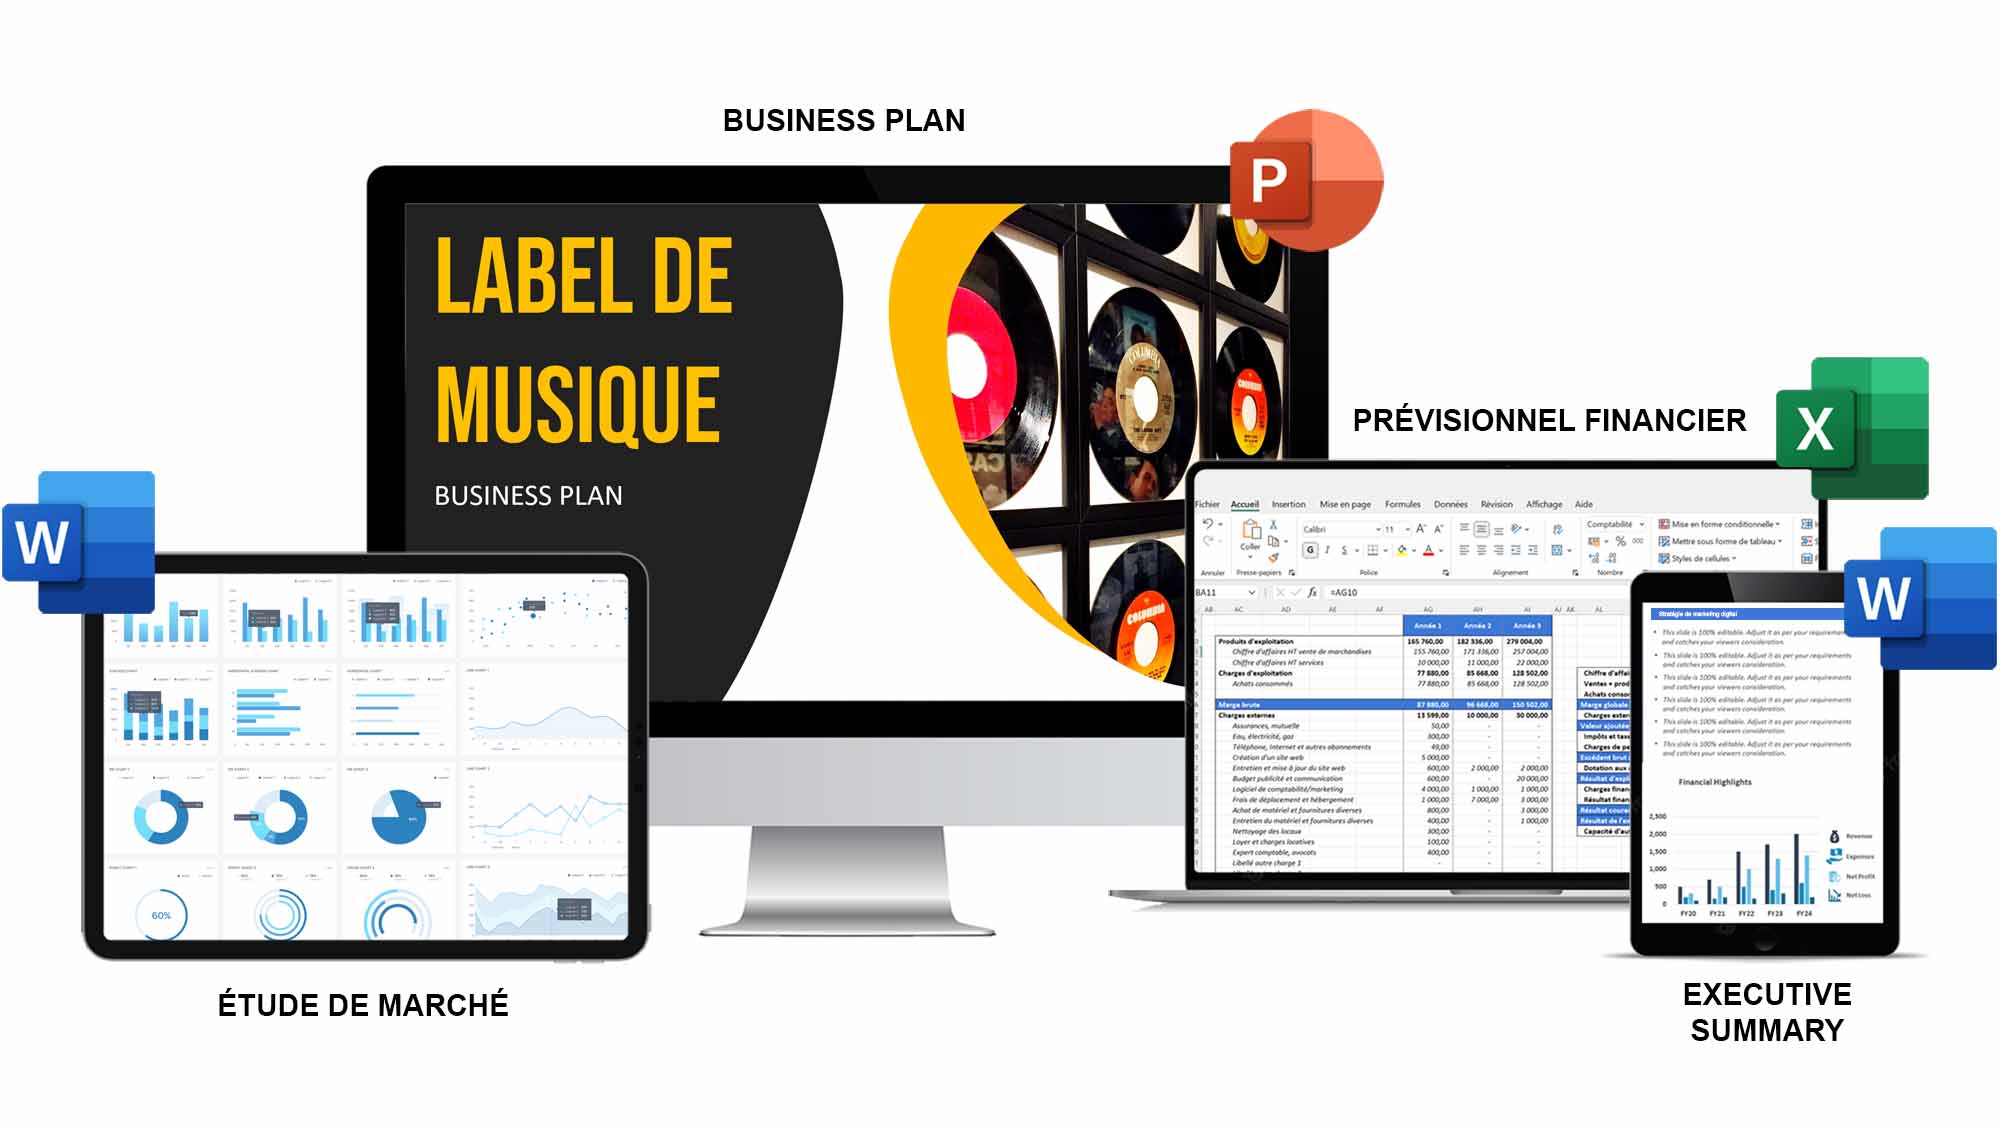 exemple de business plan label musique pdf